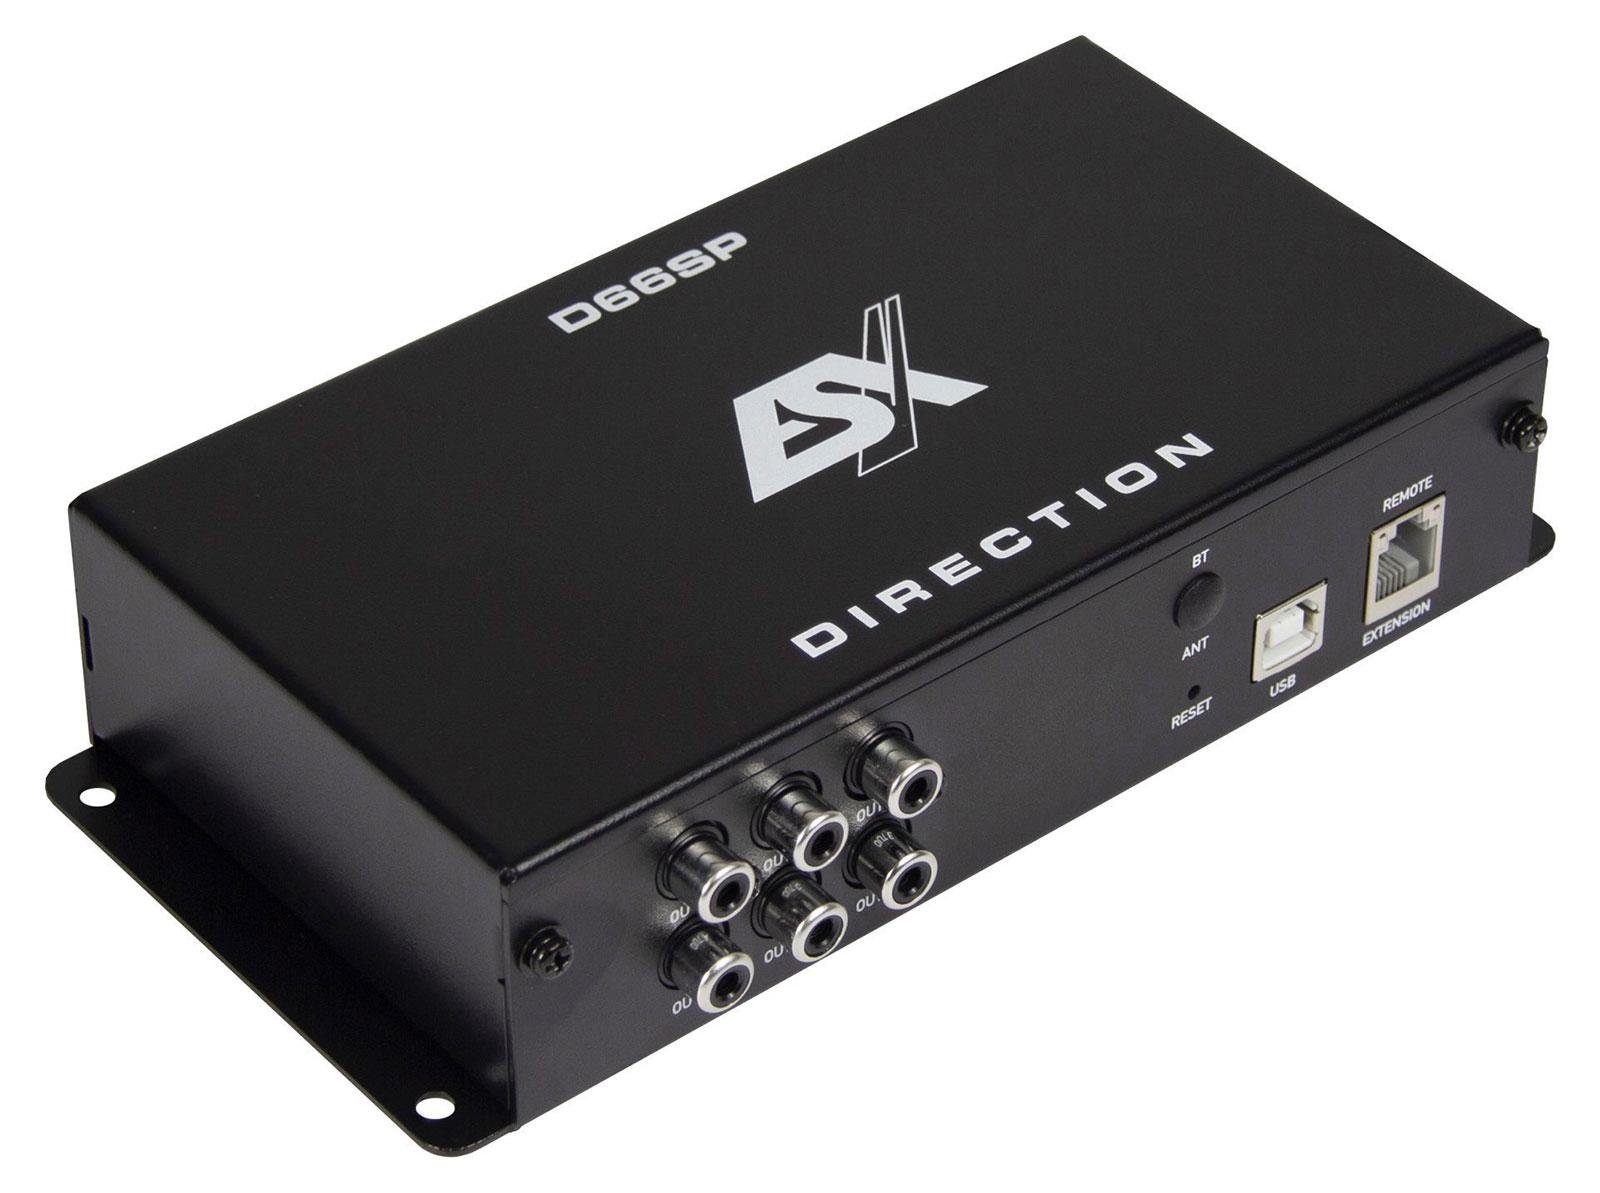 ESX Direction 6-Kanal DSP Prozessor D66SP Ausgang 8-Kanal Signalprozessor Leistungsverstärker